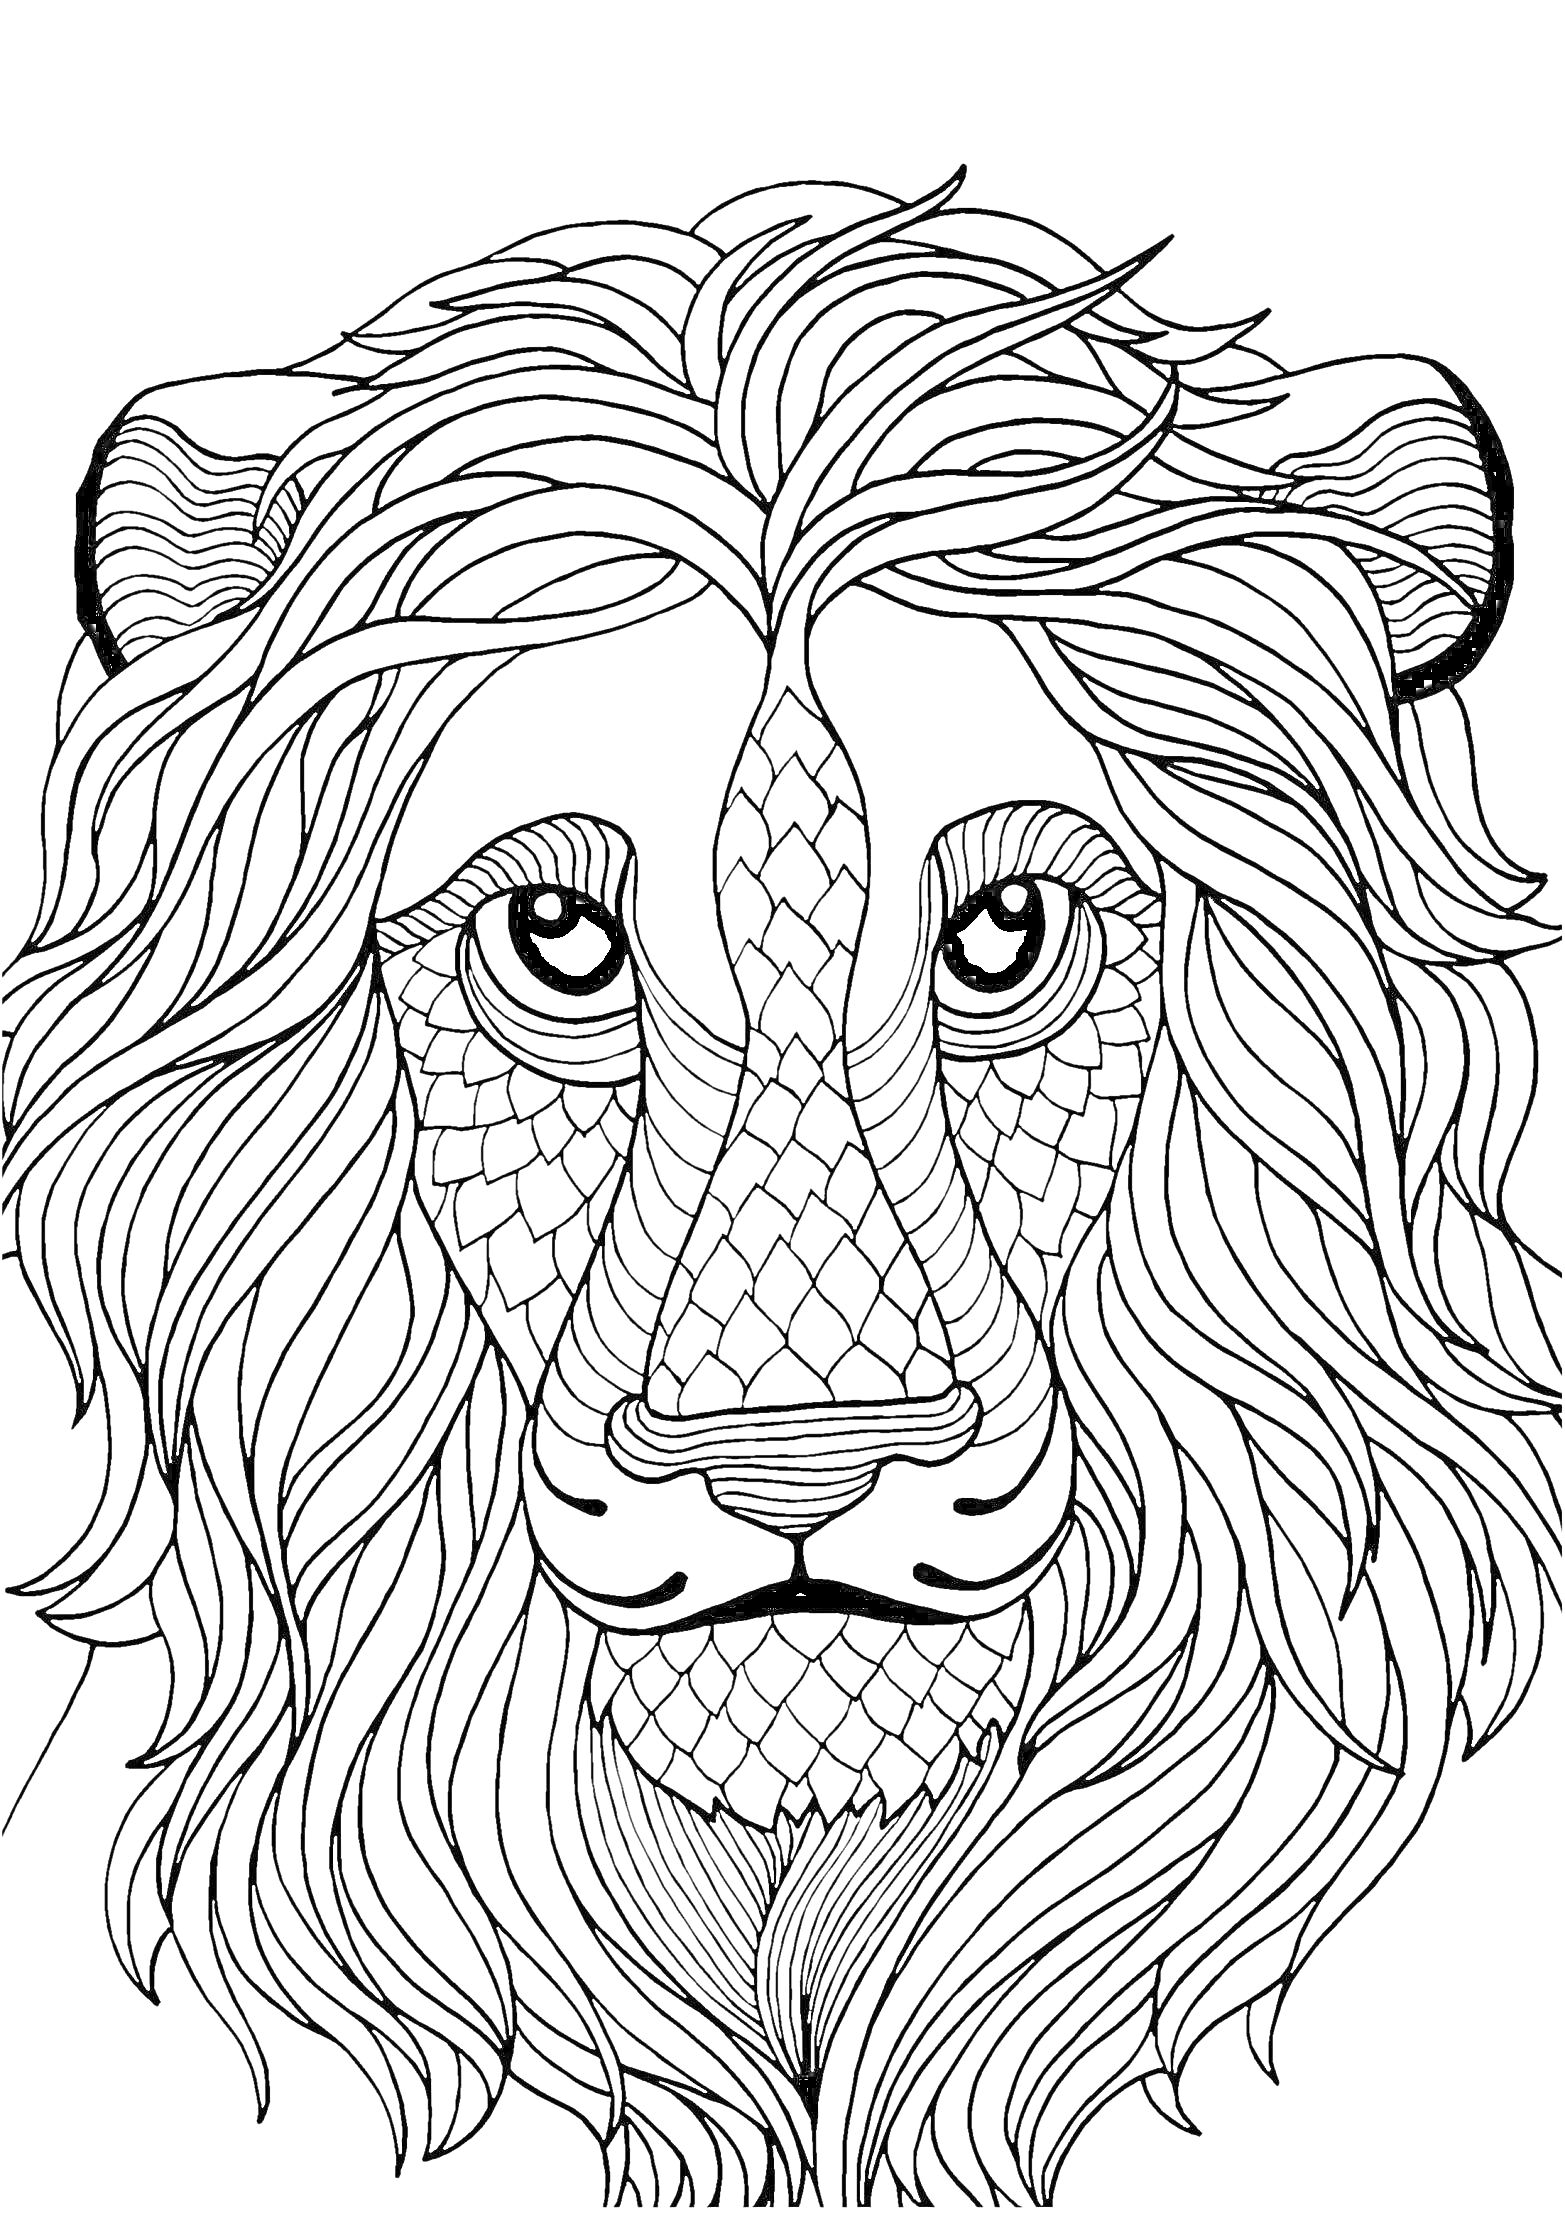 Раскраска Антистресс-раскраска льва с узорными элементами